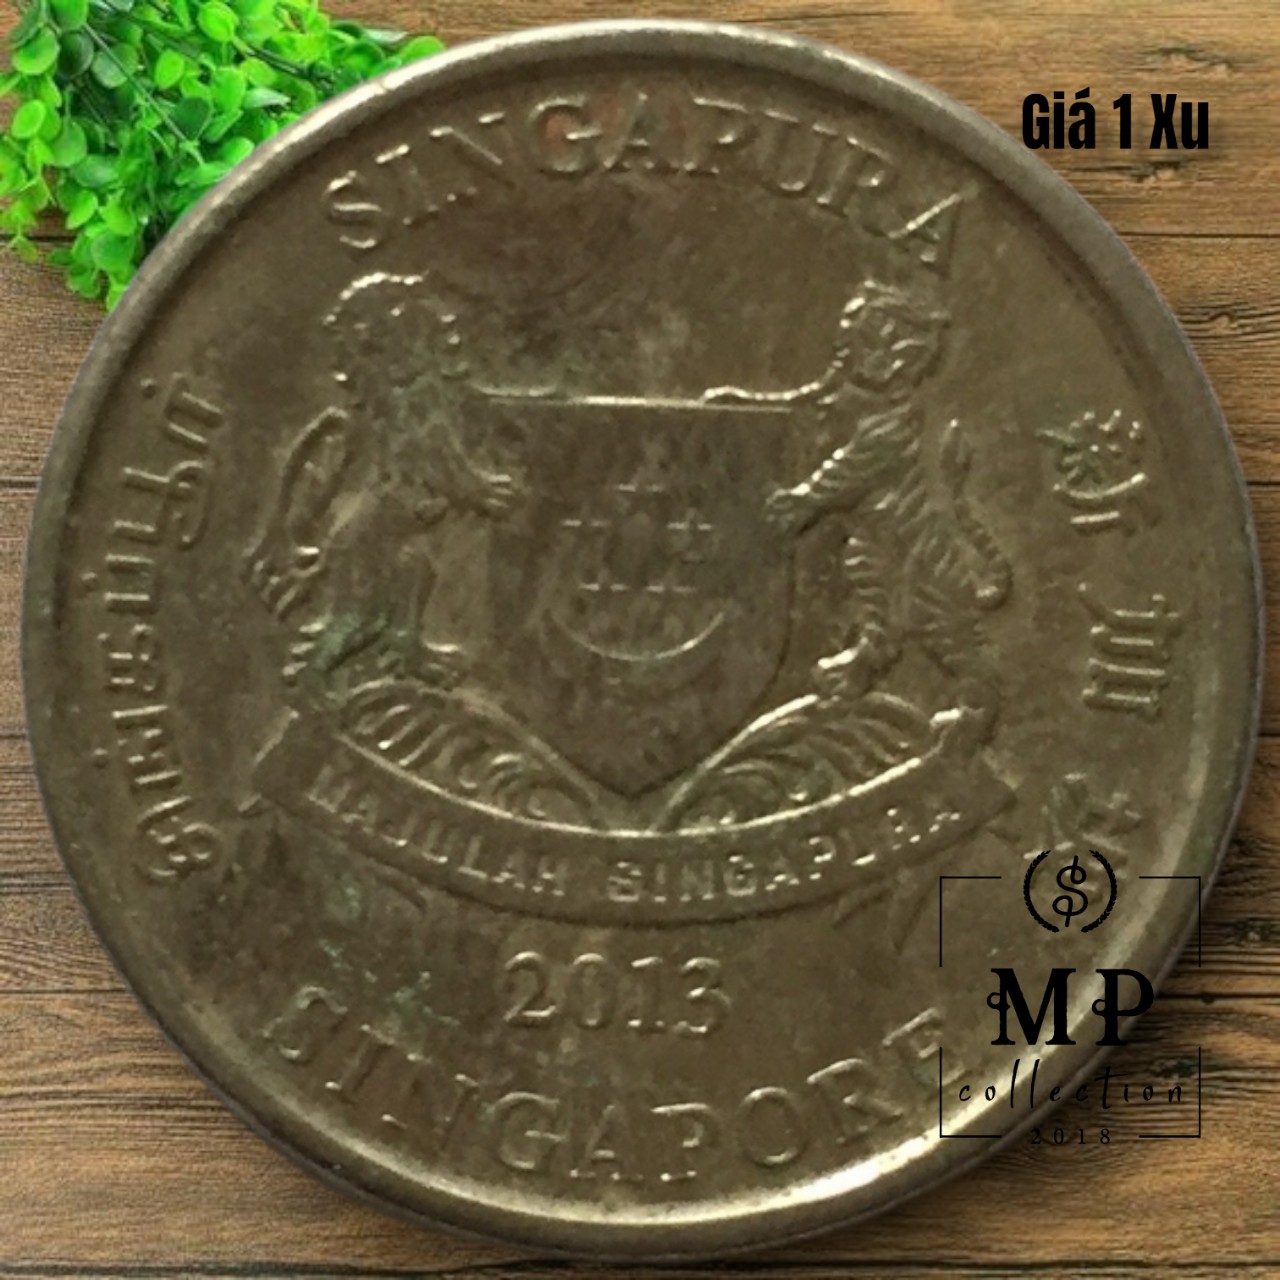 Đồng tiền xu 20 cents Singapore với hoa trinh nữ và hình ảnh sư tử năm phát hành ngẫu nhiên.